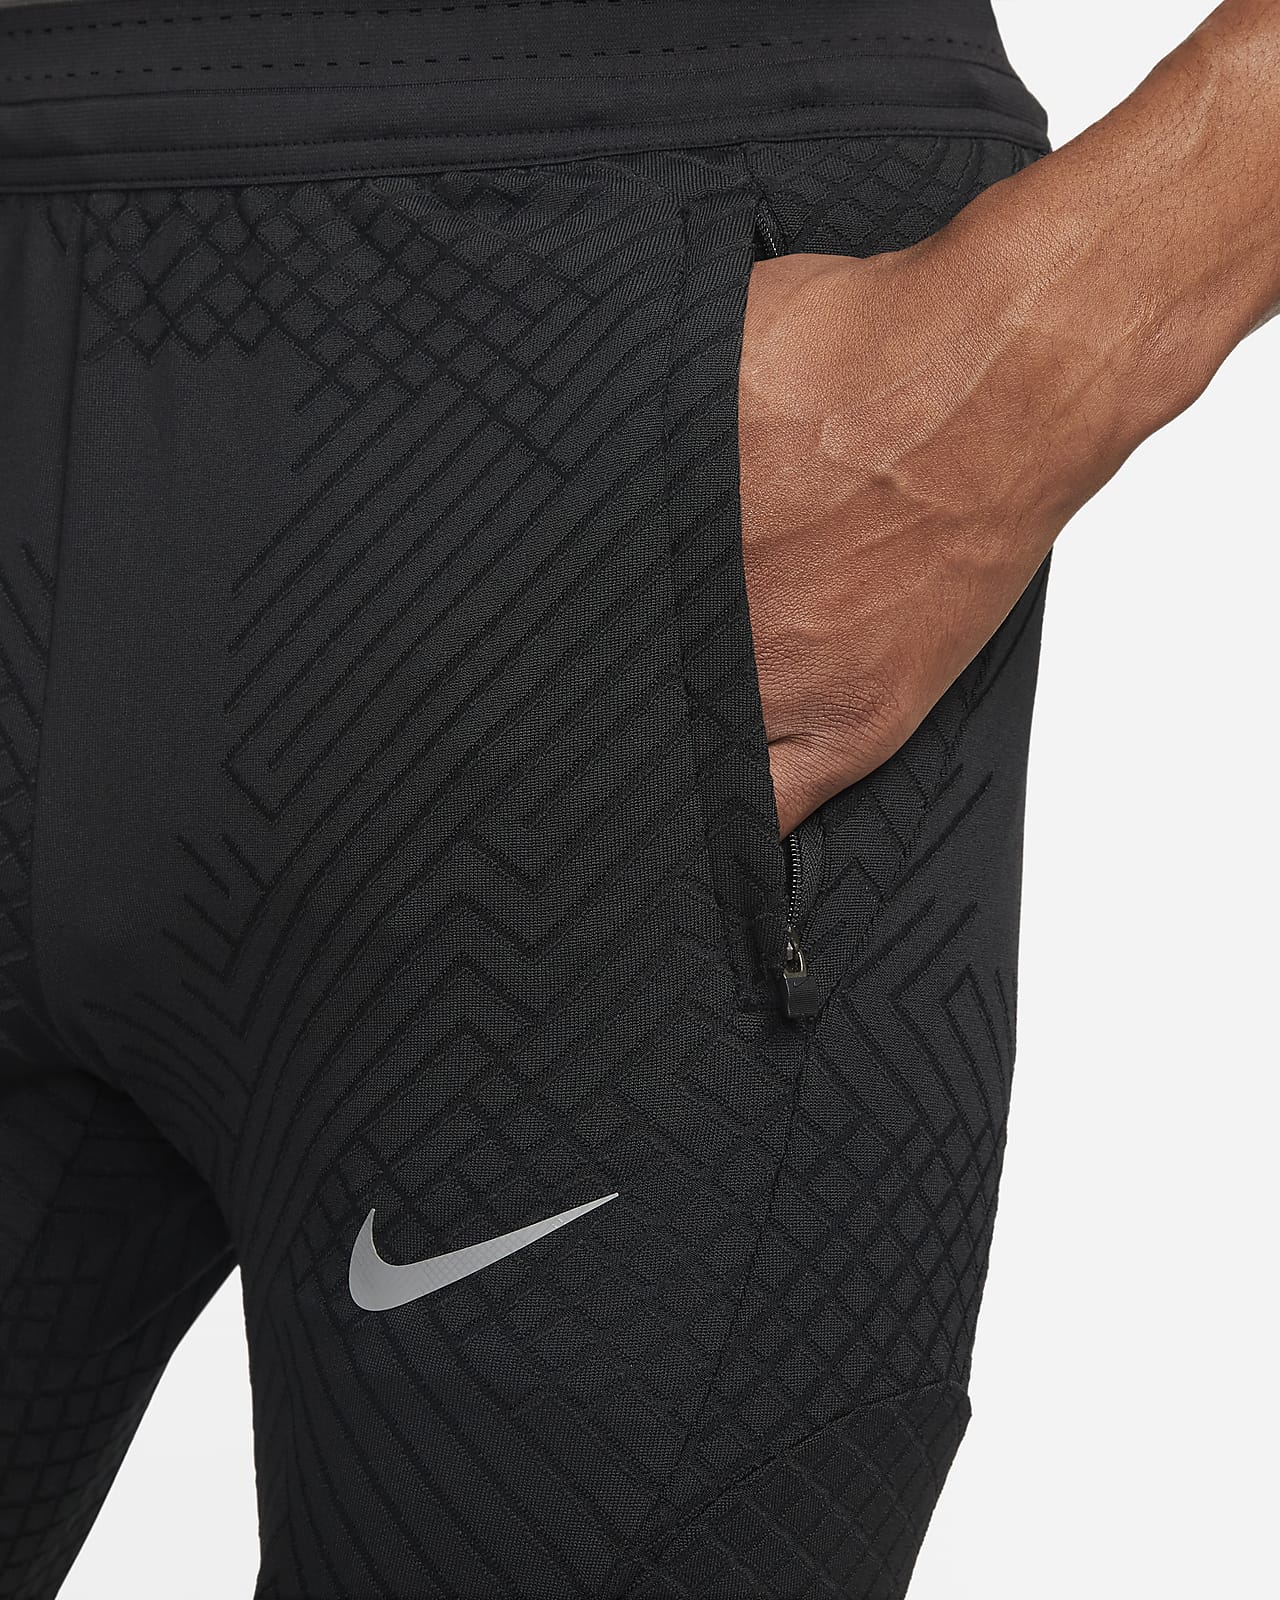 sentido transmisión ventilador FC Barcelona Strike Elite Pantalón de fútbol de tejido Knit Nike Dri-FIT  ADV - Hombre. Nike ES